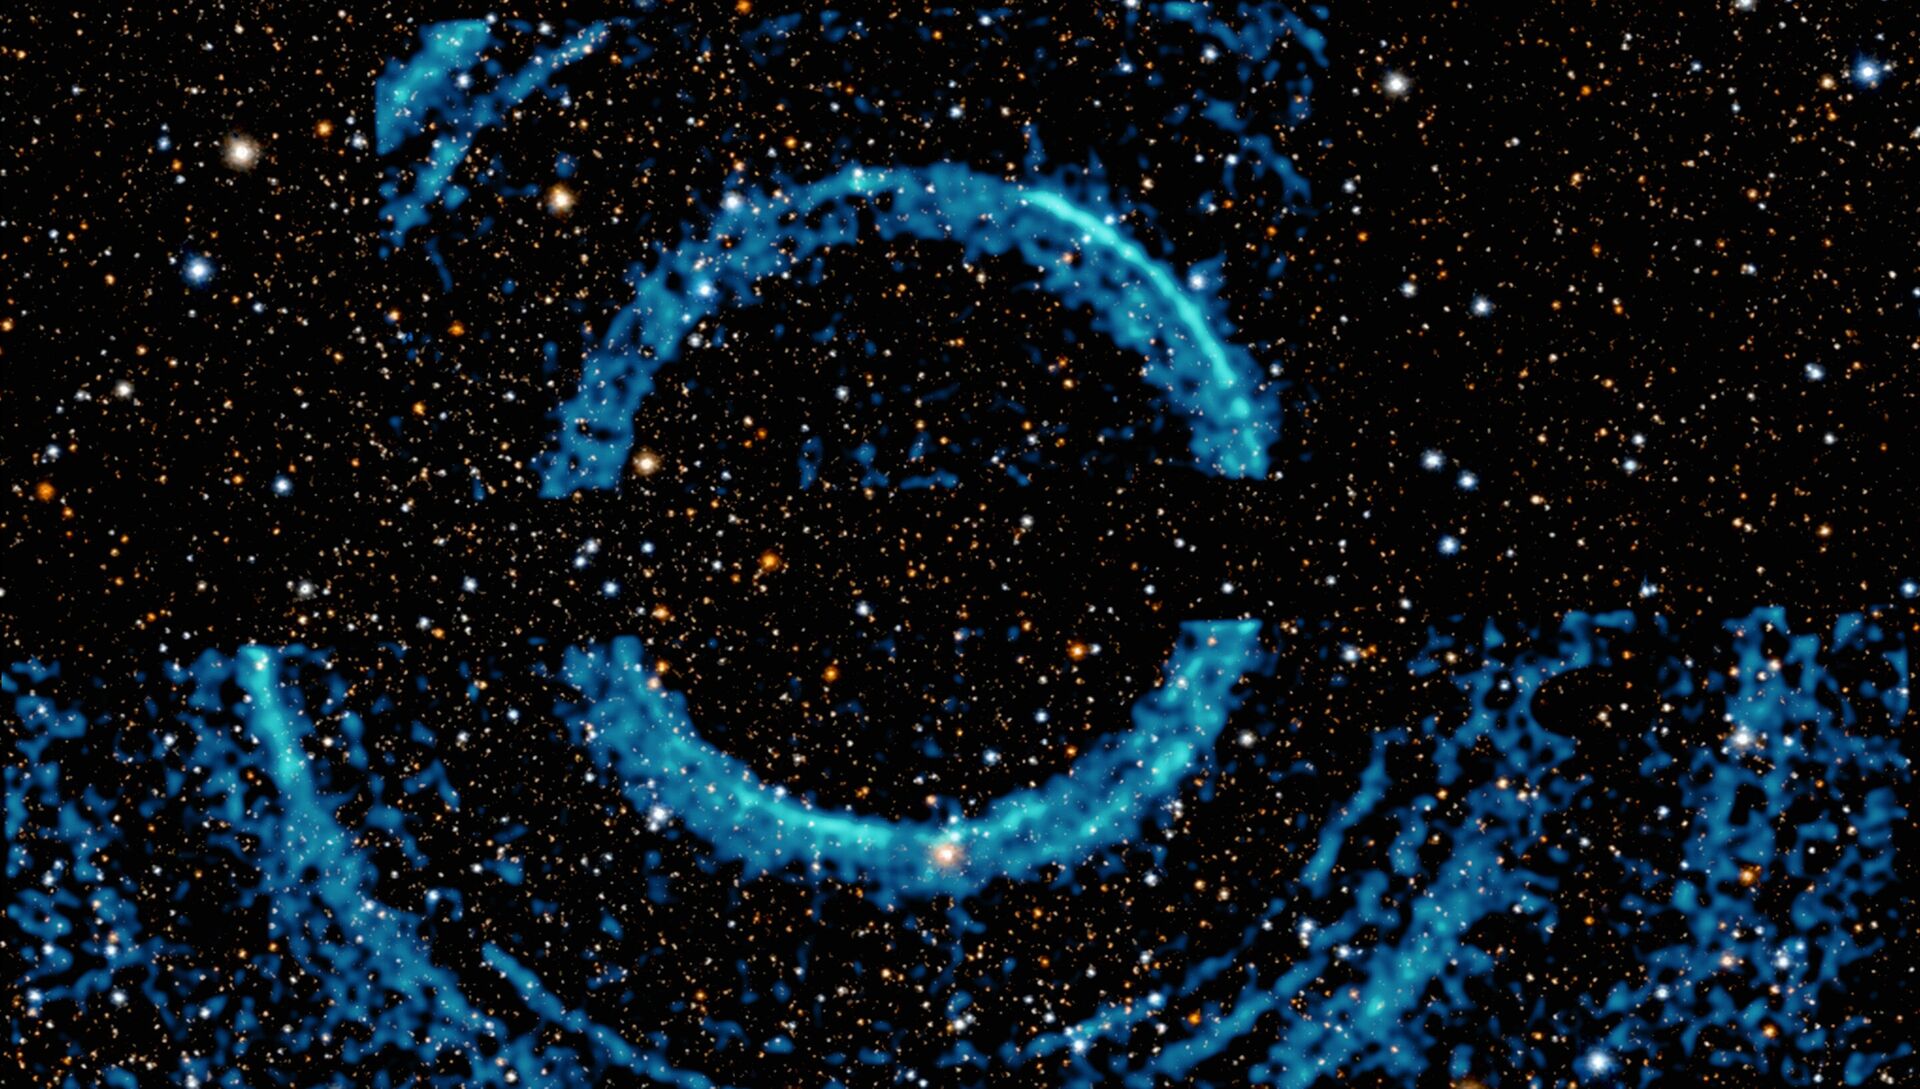 Observatórios espaciais revelam FOTO de buraco negro rodeado de anéis gigantes de poeira - Sputnik Brasil, 1920, 09.08.2021